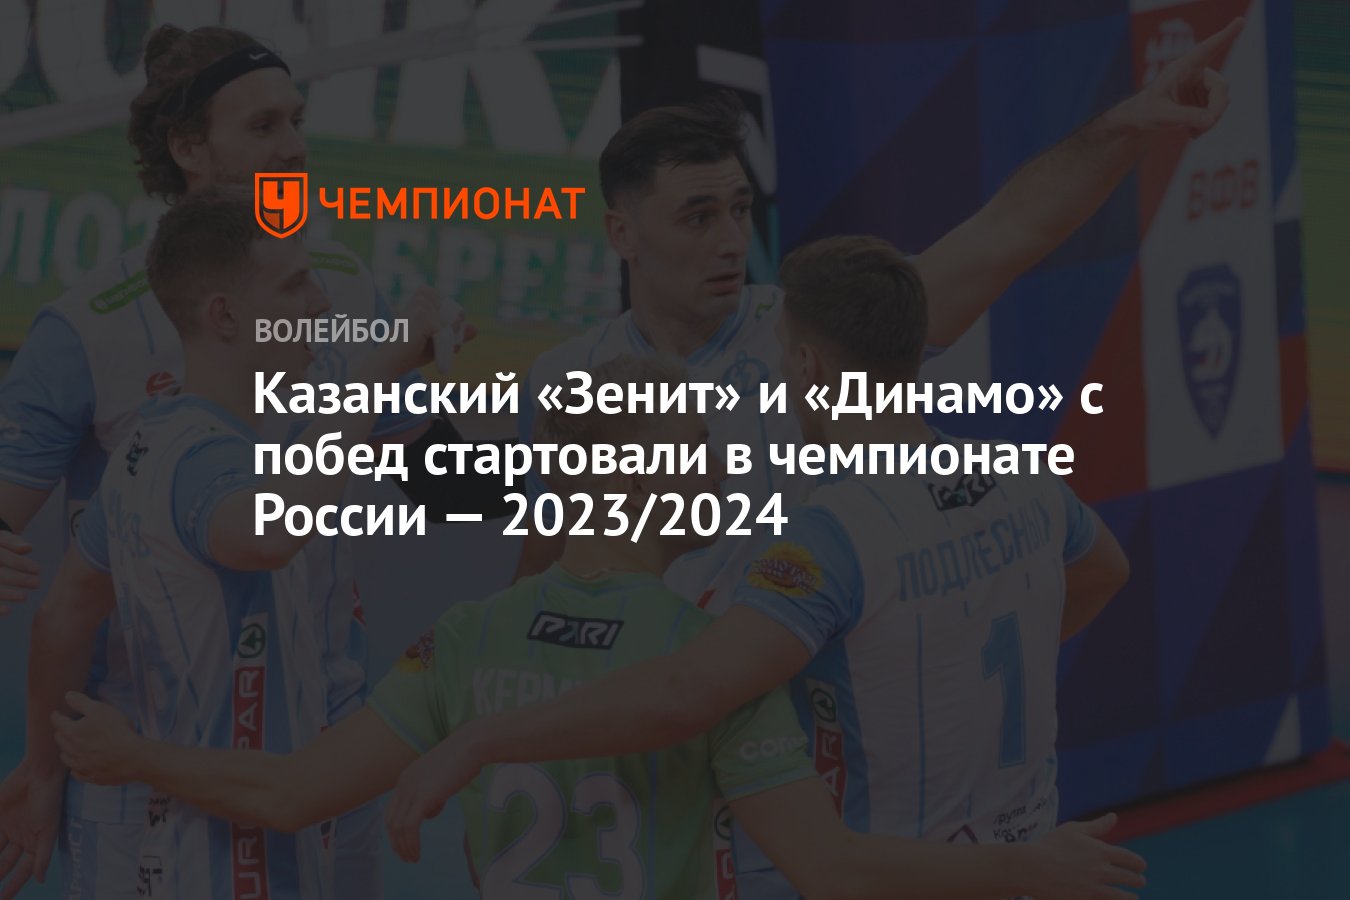 Волейбол чемпионат россии мужчины женщины 2023 2024. Чемпионат России по волейболу среди мужчин 2023/2024.